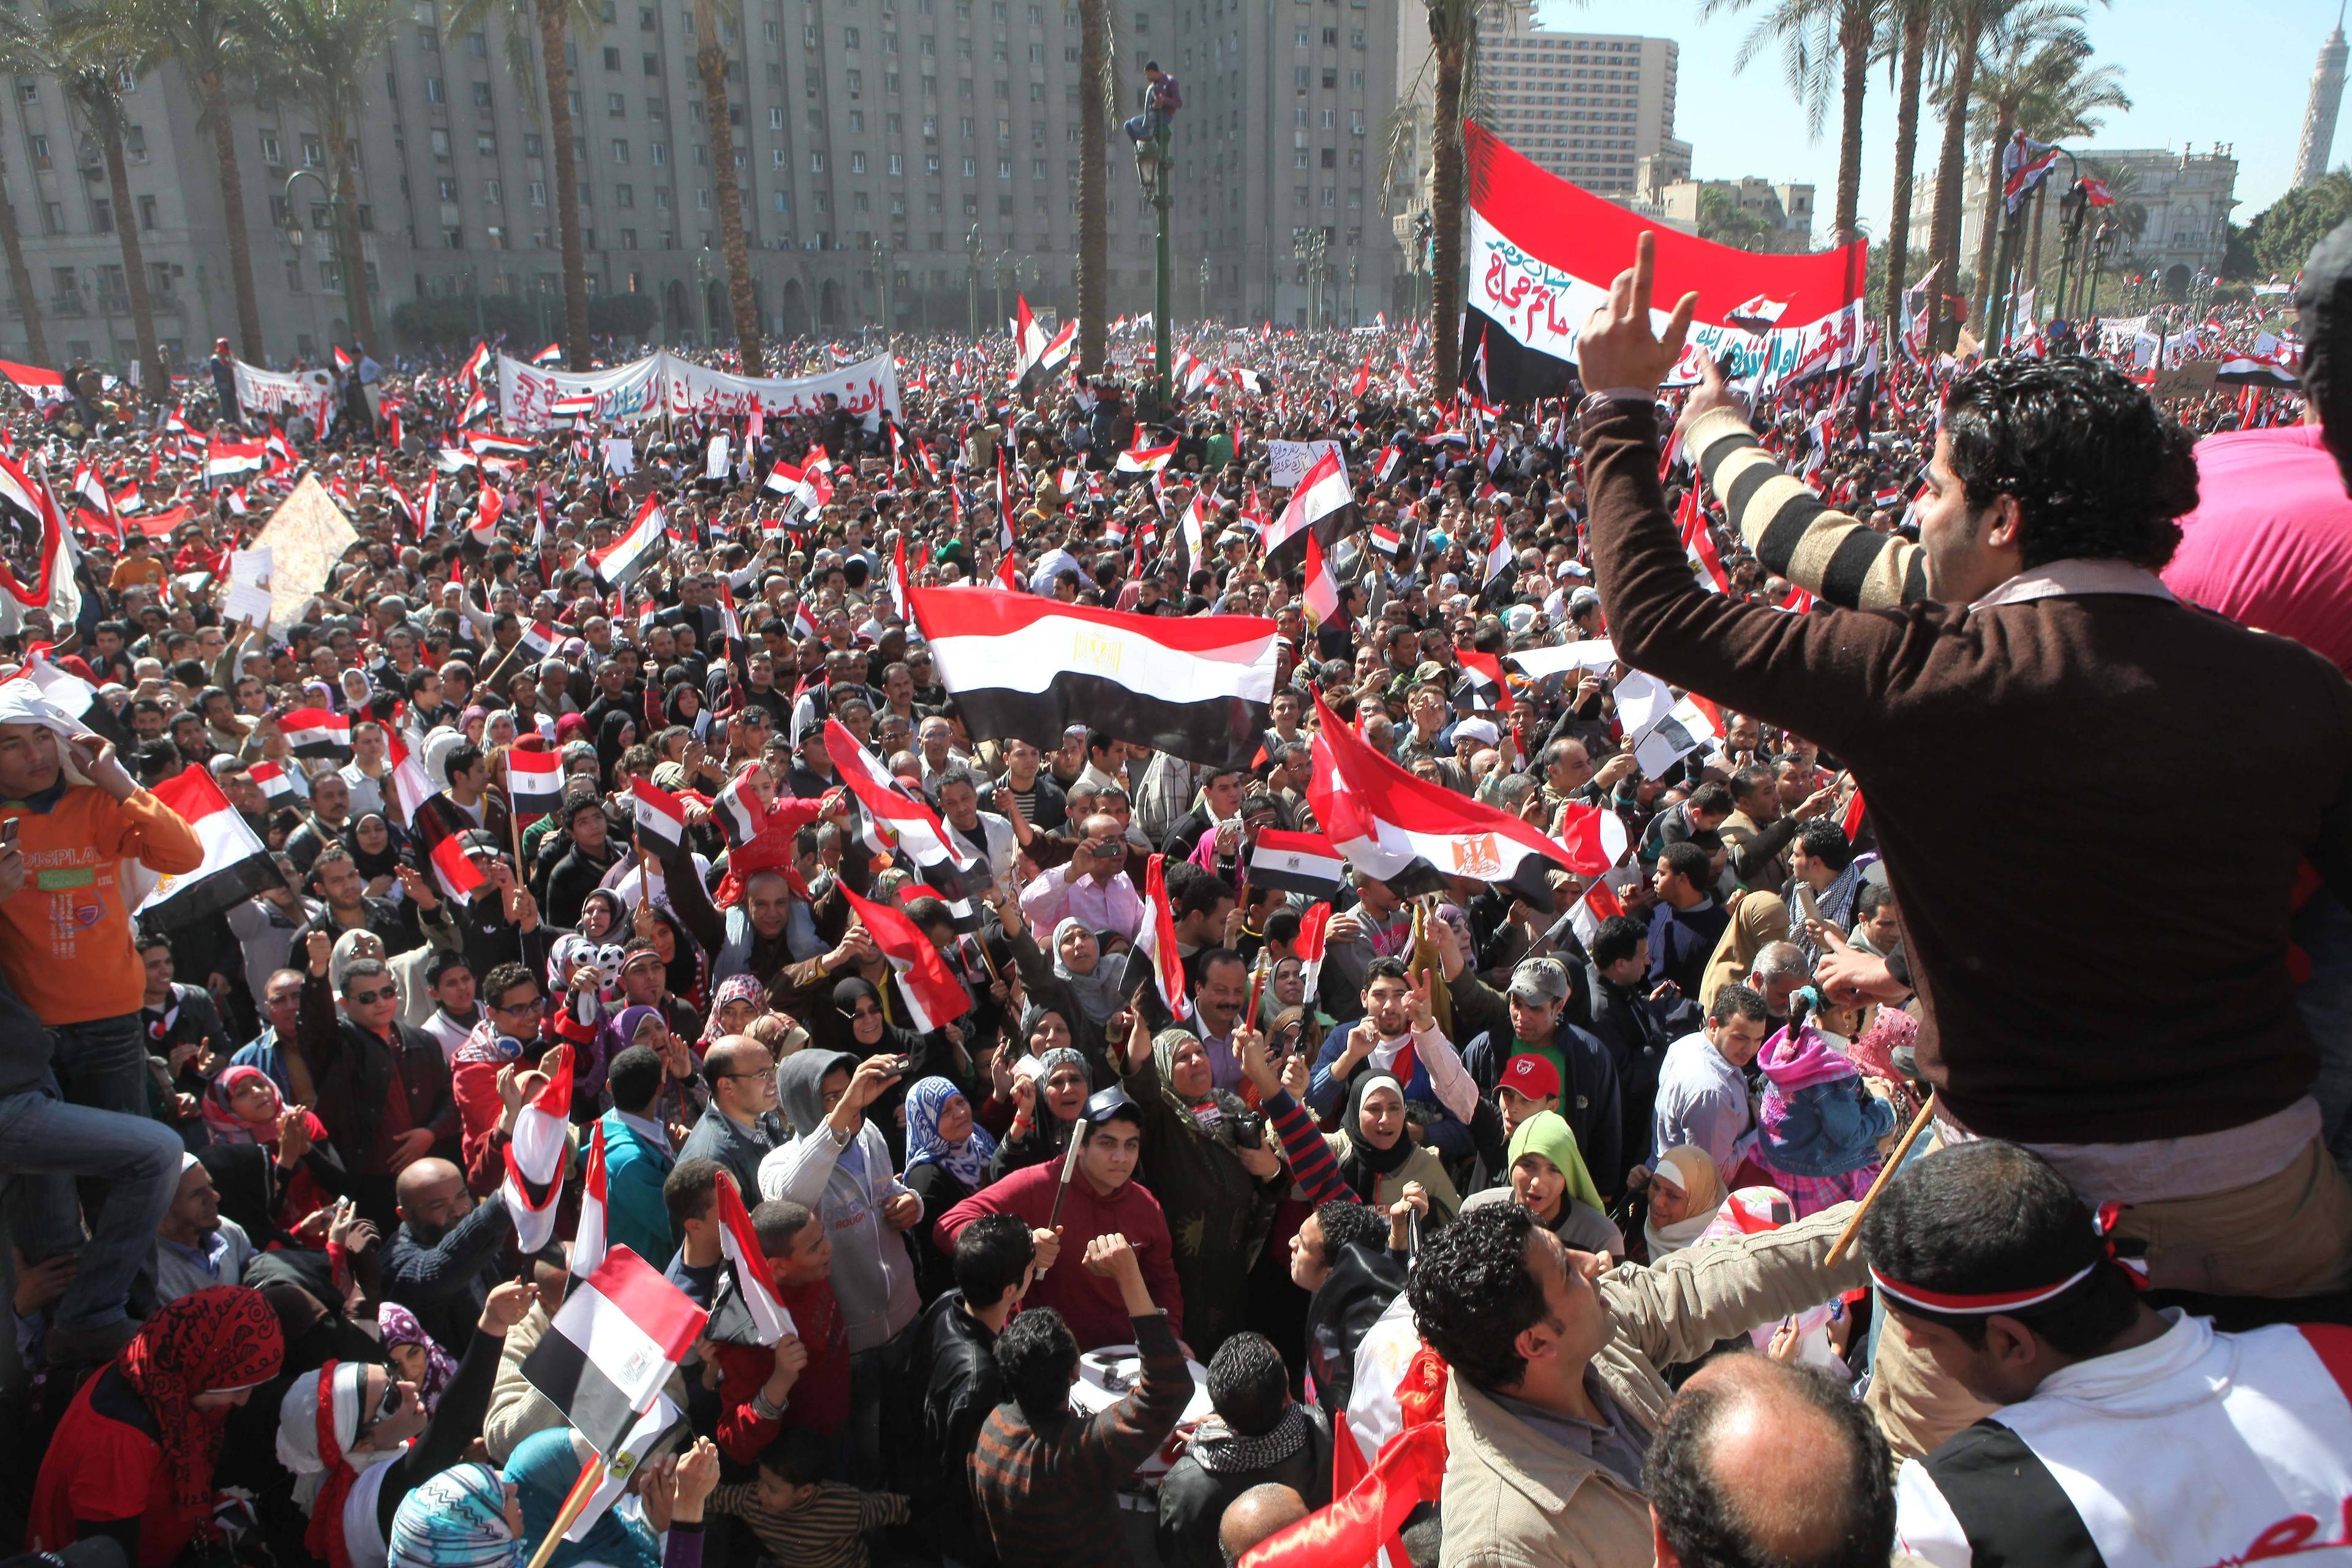 Mehr als 1 Million Menschen versammelten sich in der Kairoer Innenstadt am 18. Februar 2011, um den Rücktritt des Präsidenten Hosni Mubarak zu feiern.